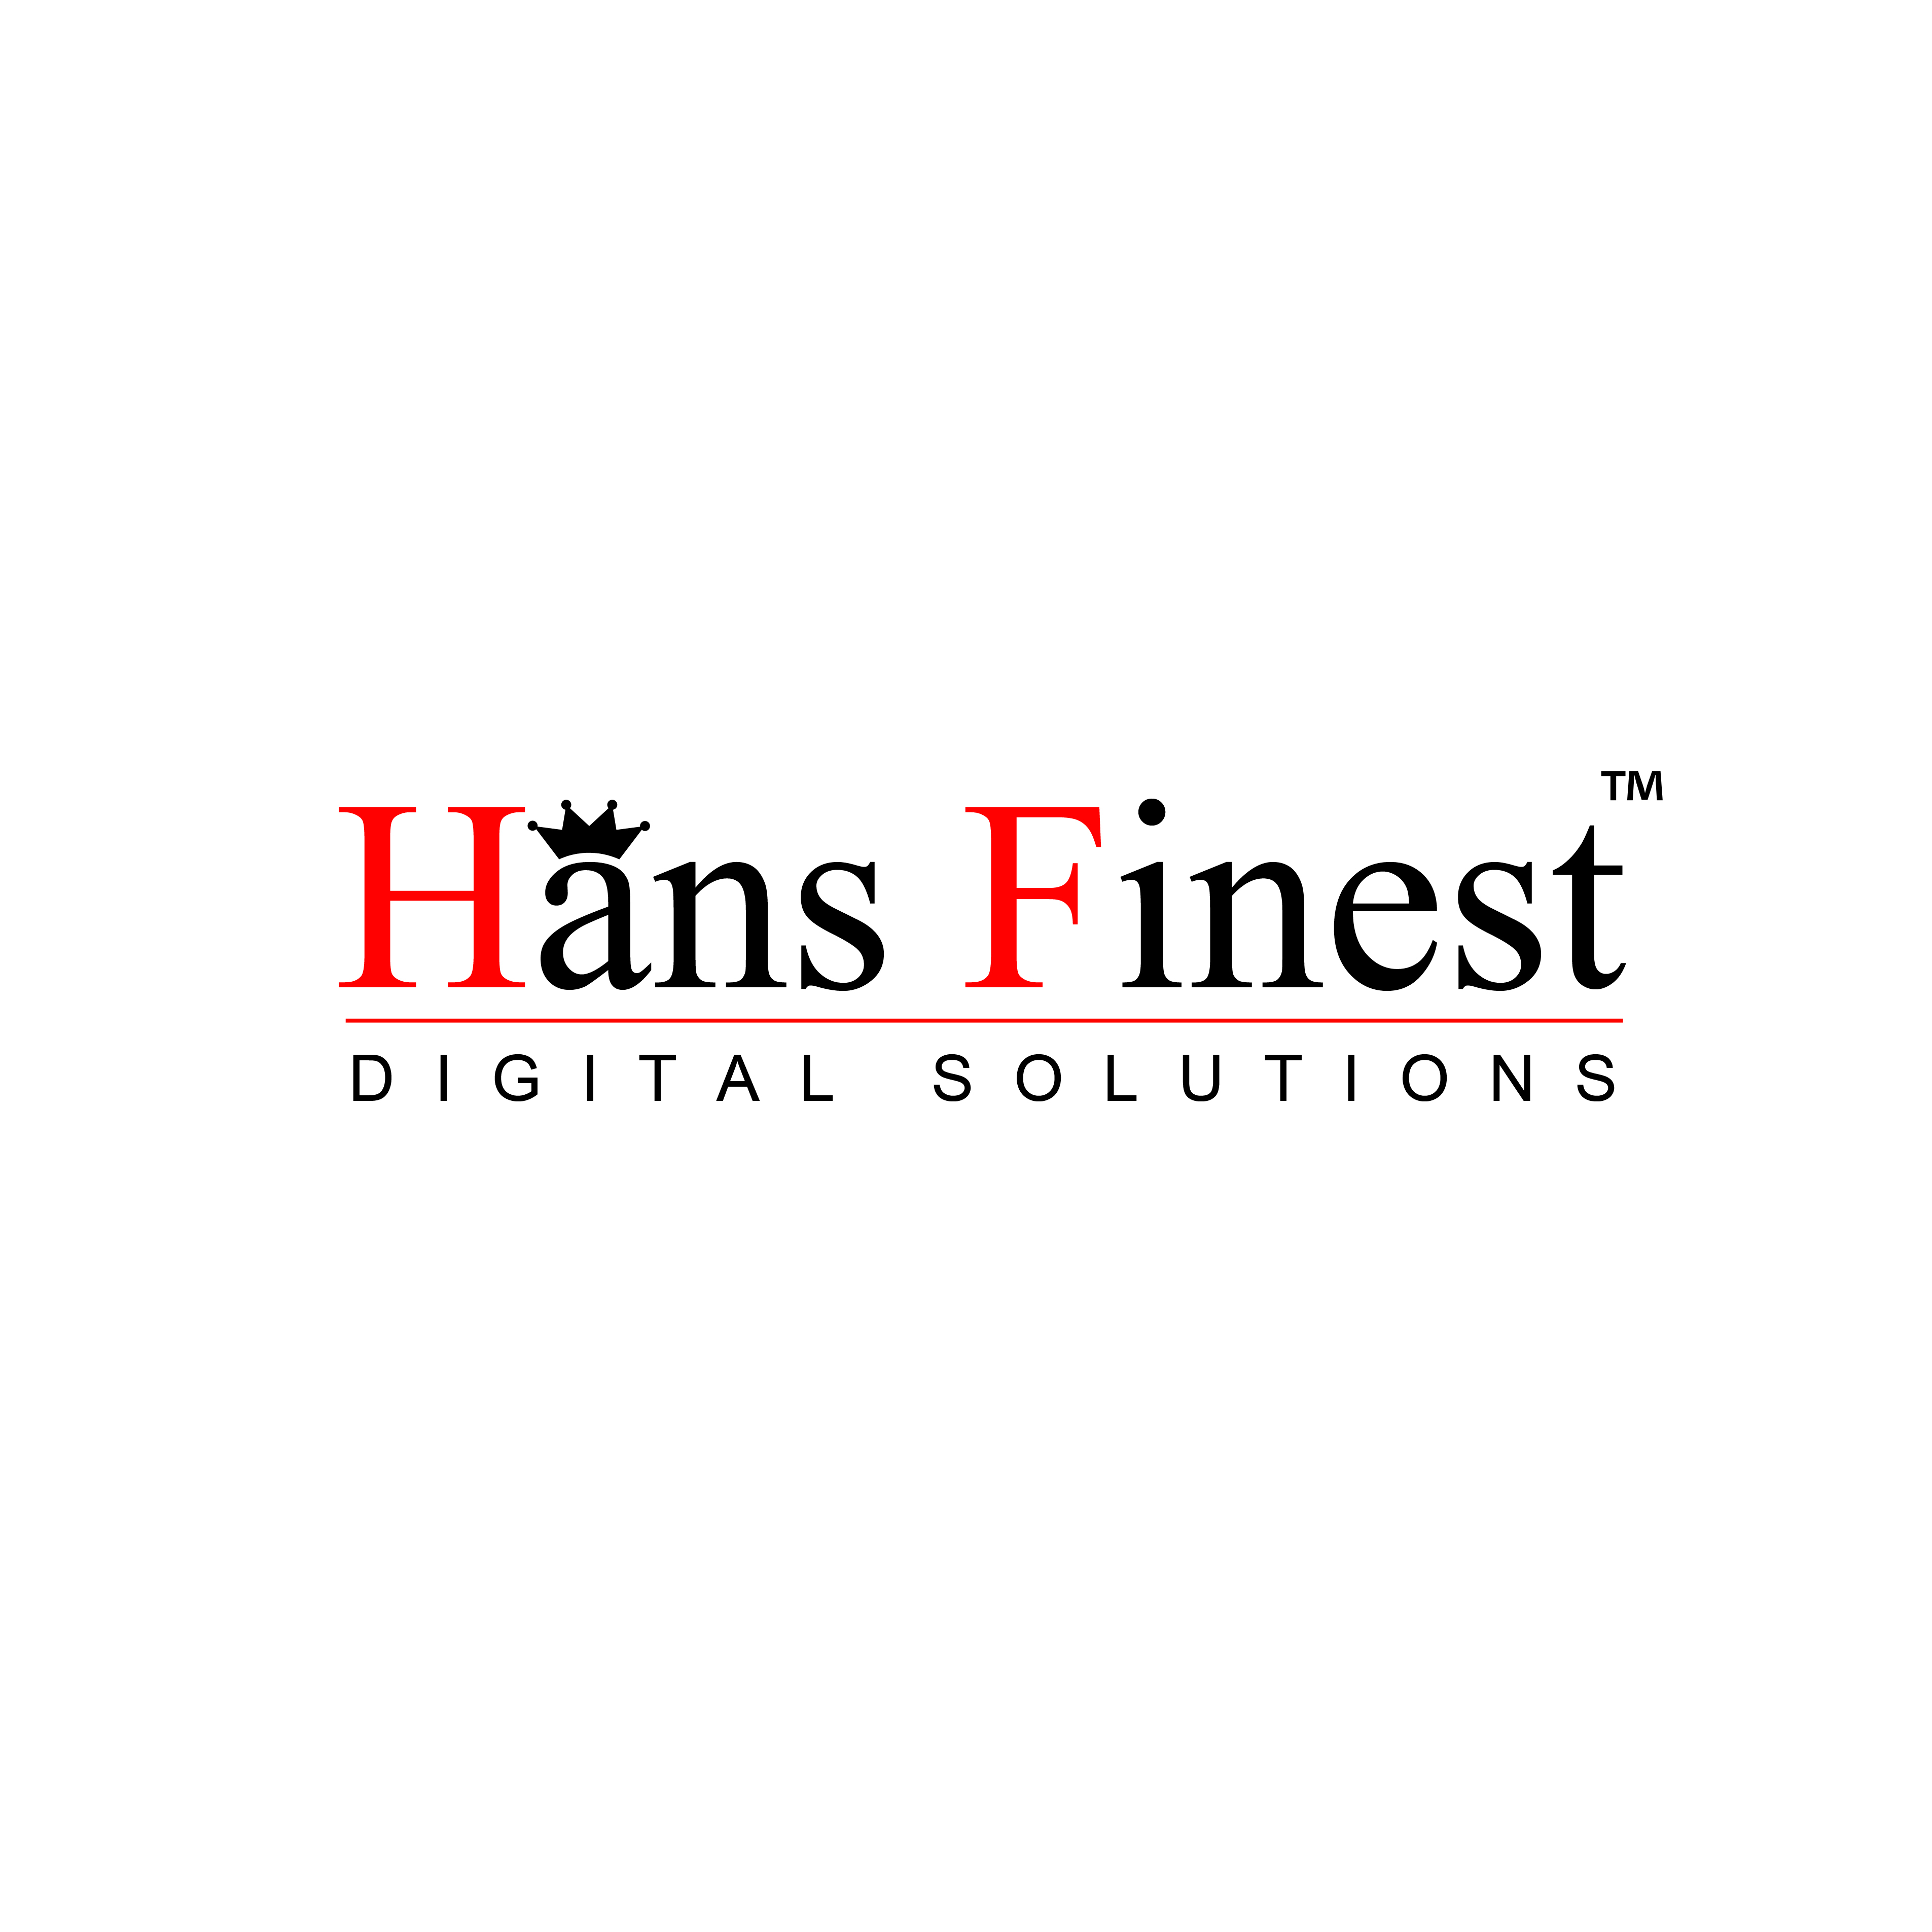 Hans Finest Digital Solutions